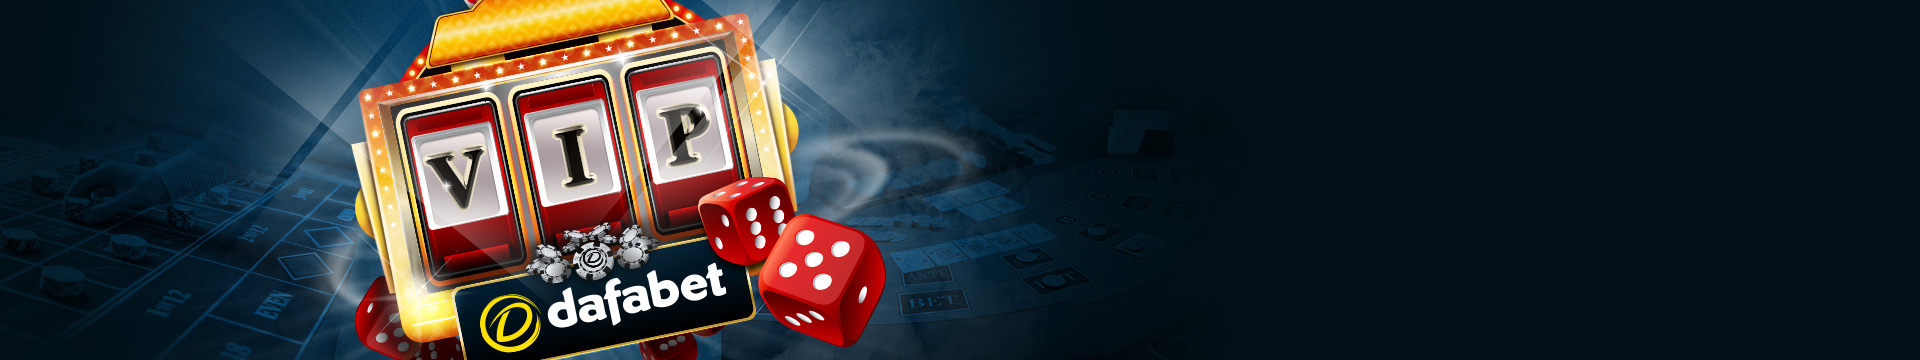 Klub VIP Kemakmuran Dafabet Poker